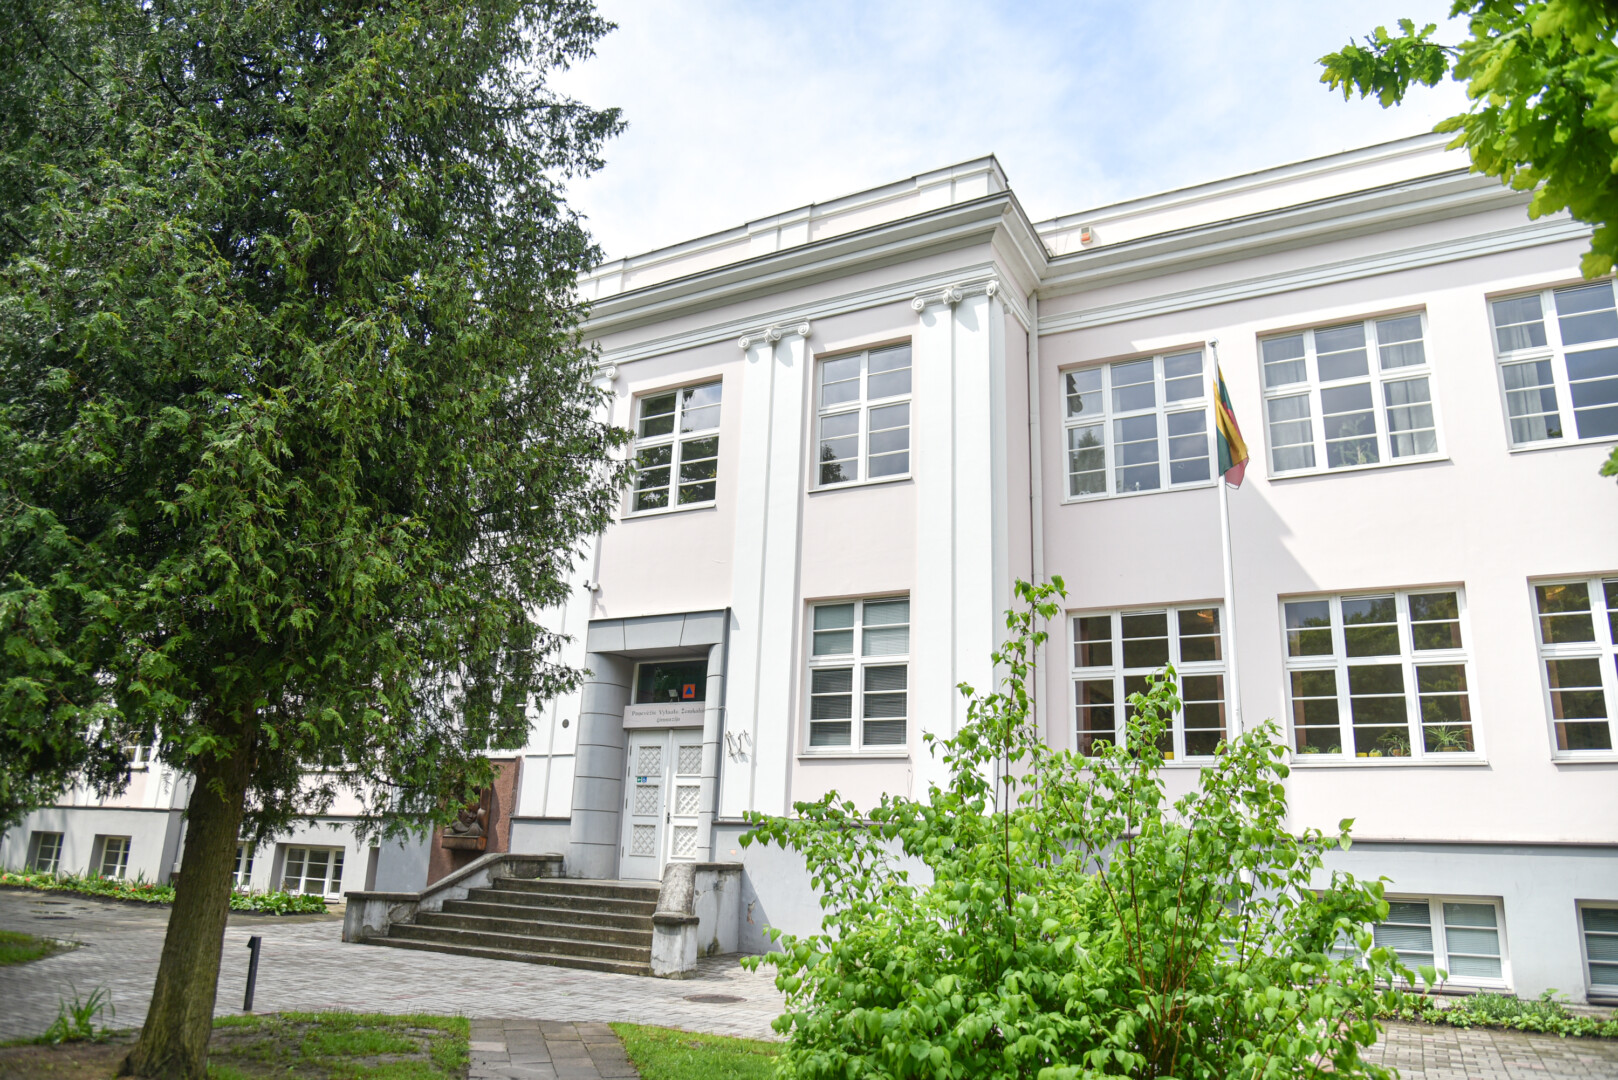 Nacionalinis visuomenės sveikatos centras, įvertinęs Vytauto Žemkalnio gimnazijos senojo pastato patalpas, atsisakė išduoti higienos pasą.